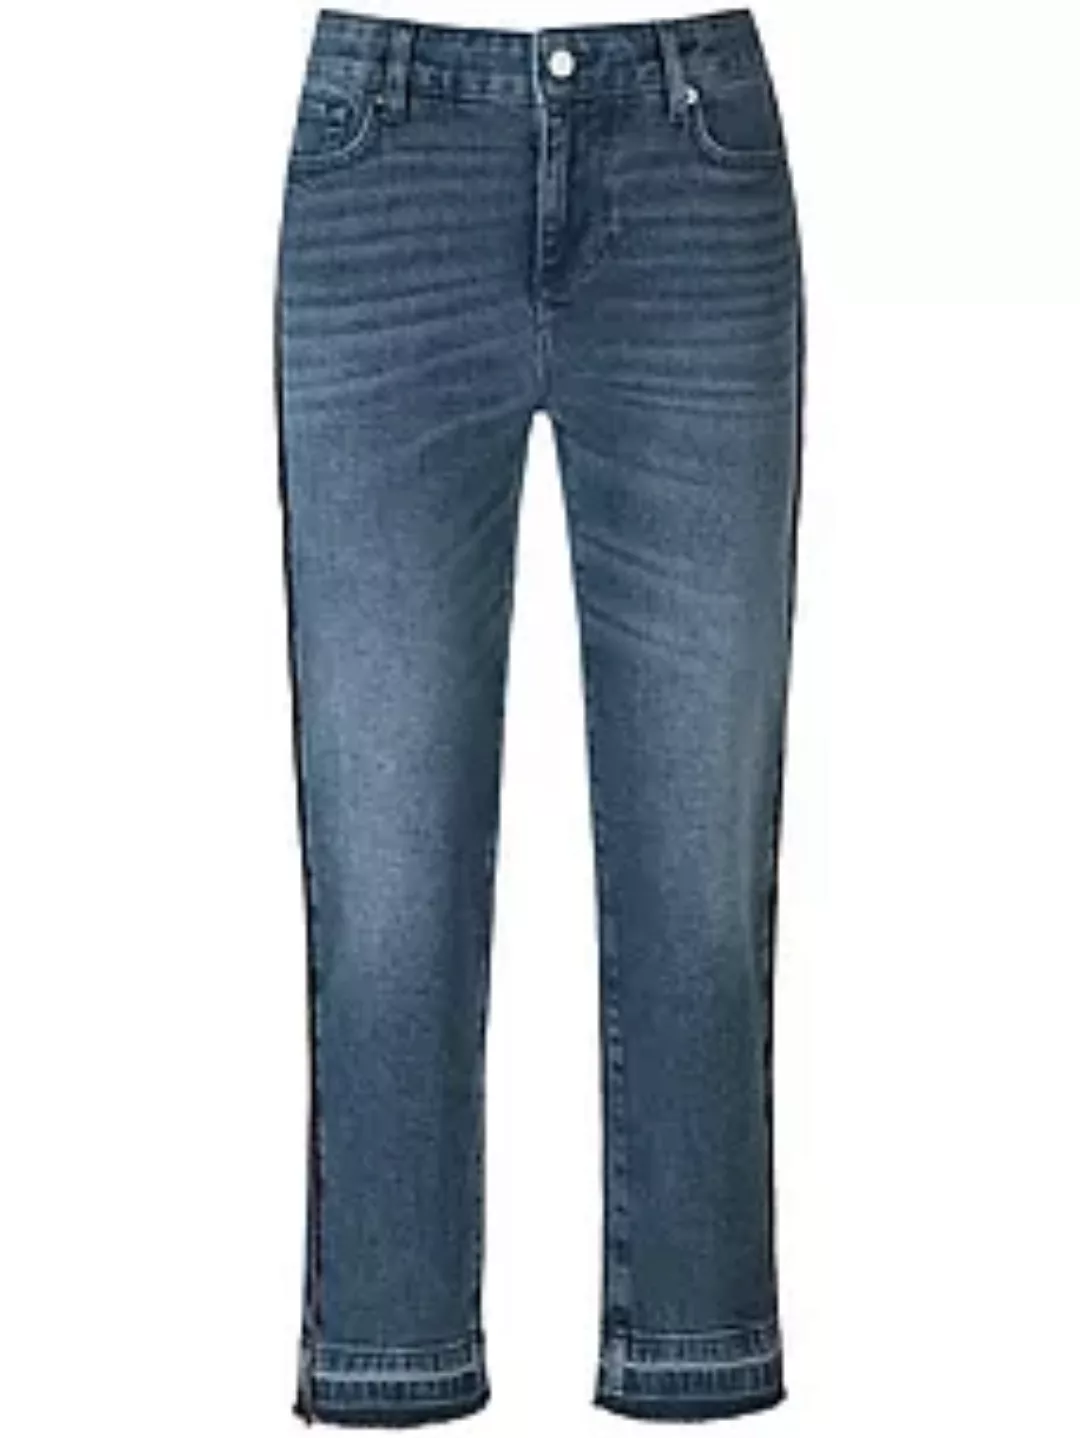 Jeans Passform Sylvia Peter Hahn denim günstig online kaufen